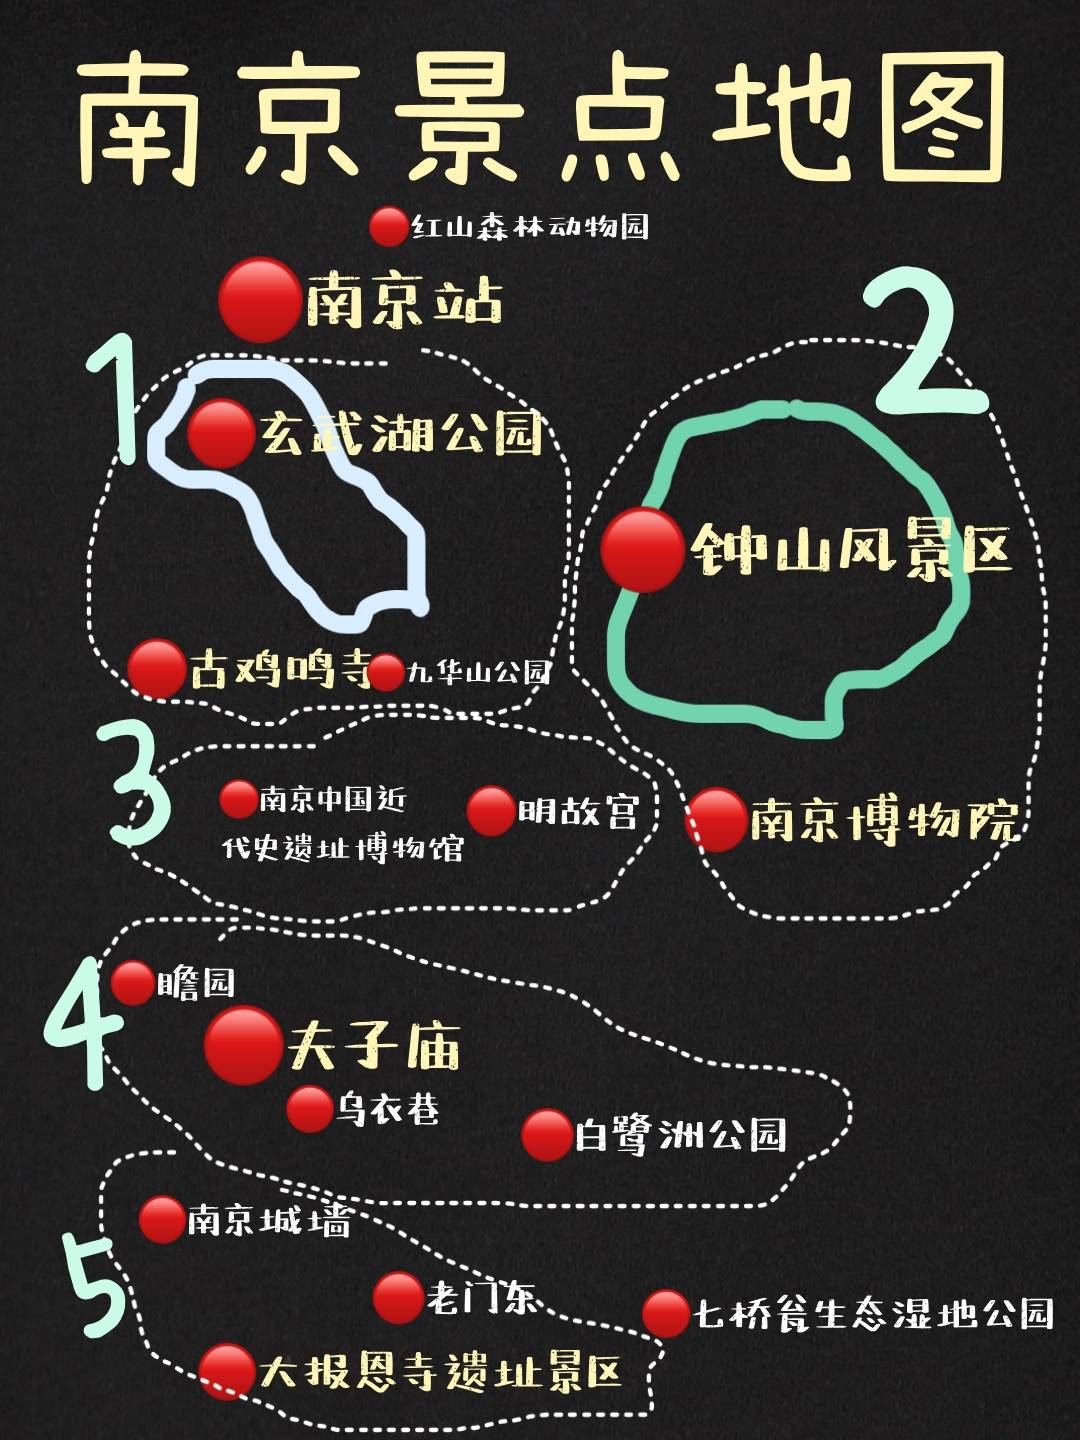 南京旅游行李寄存攻略,南京景点地图及地铁沿线景点攻略